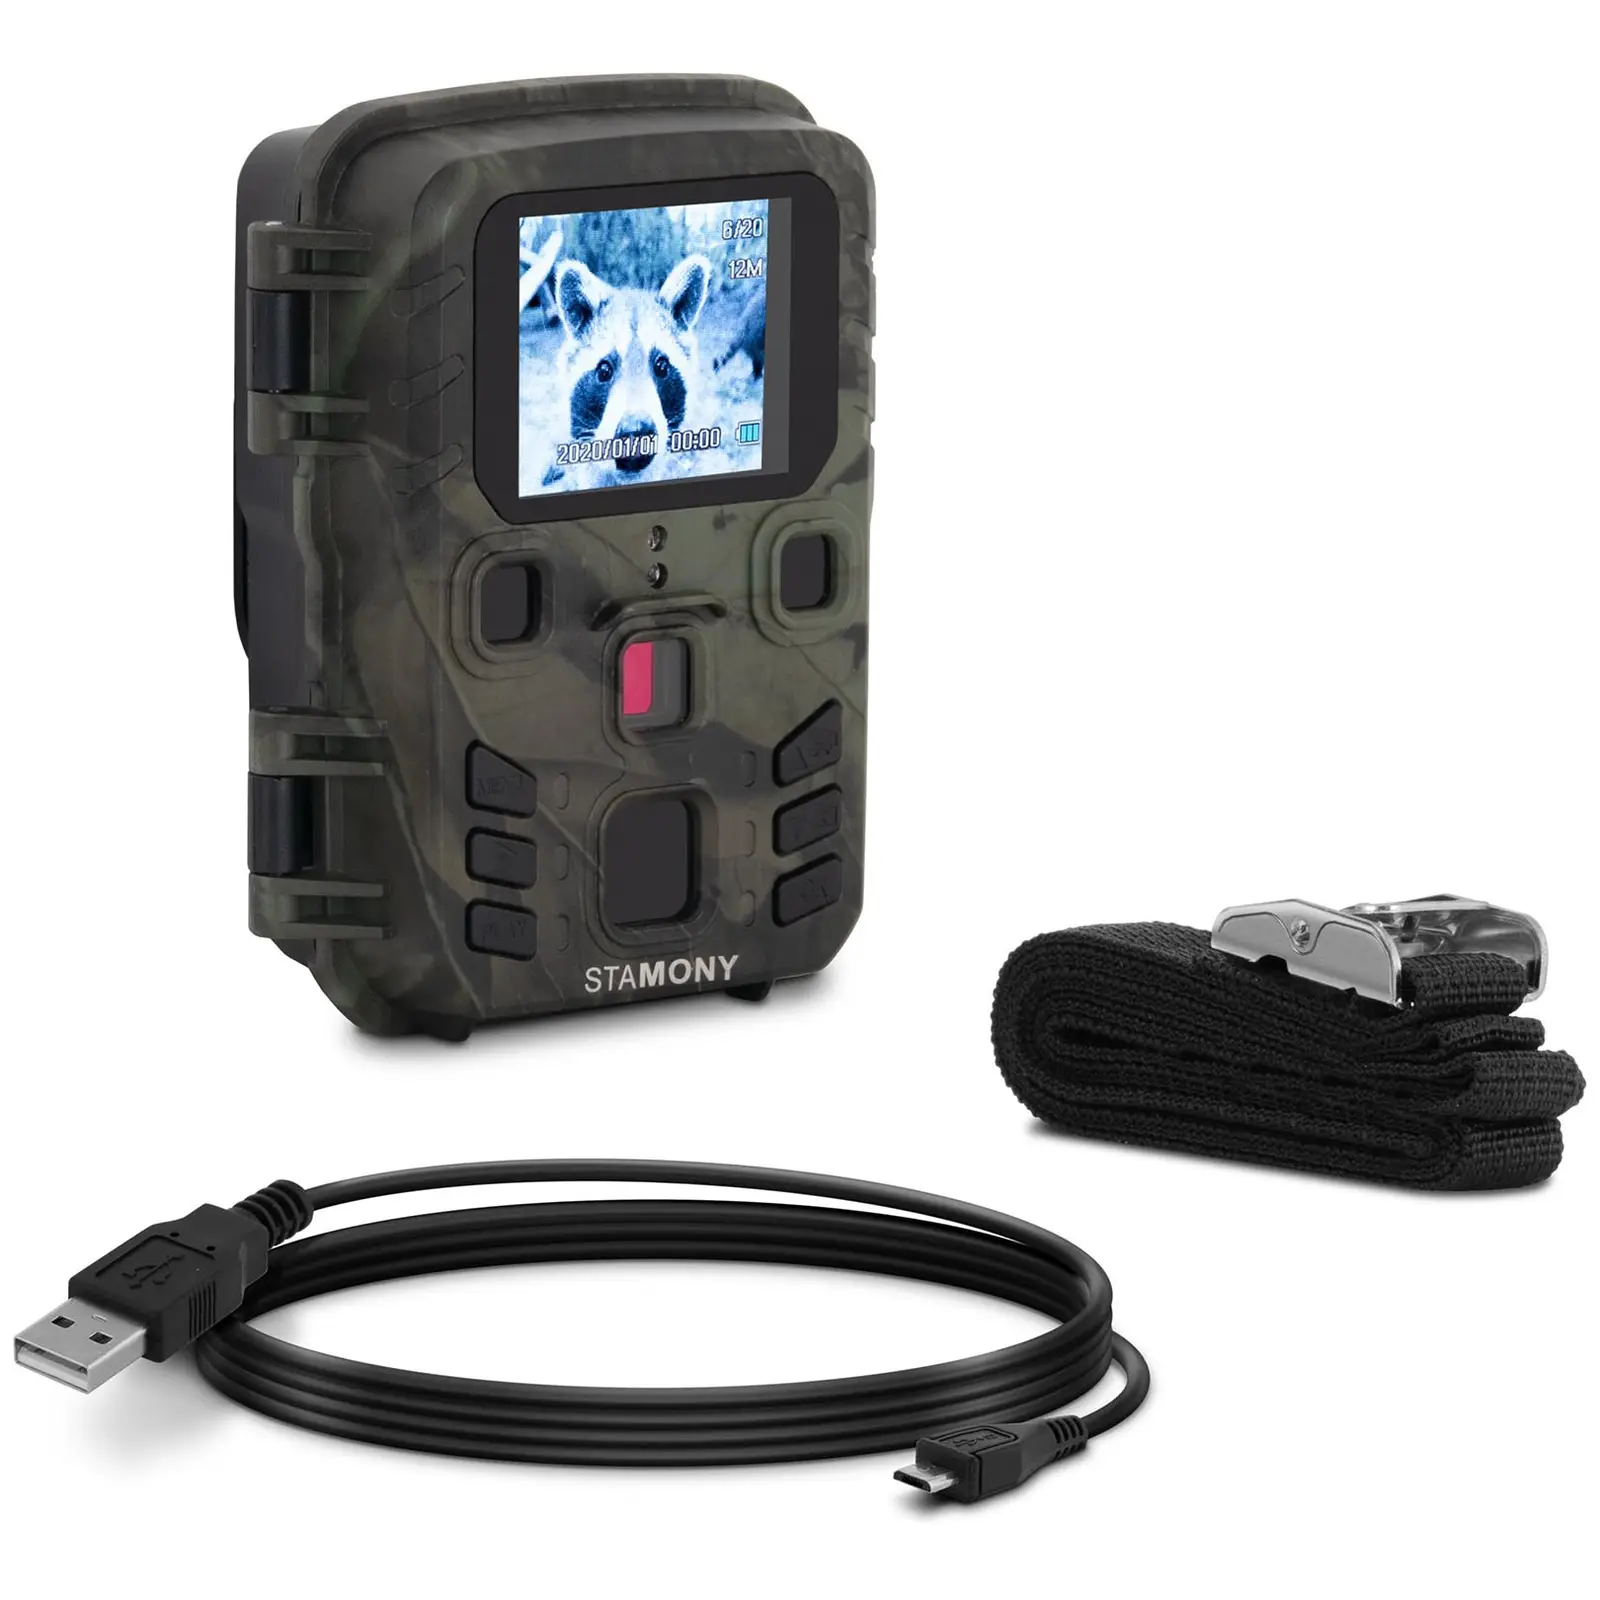 Mini kamera na sledování divoké zvěře - 5 MP - Full HD rozlišení - 20 m - 1,1 s